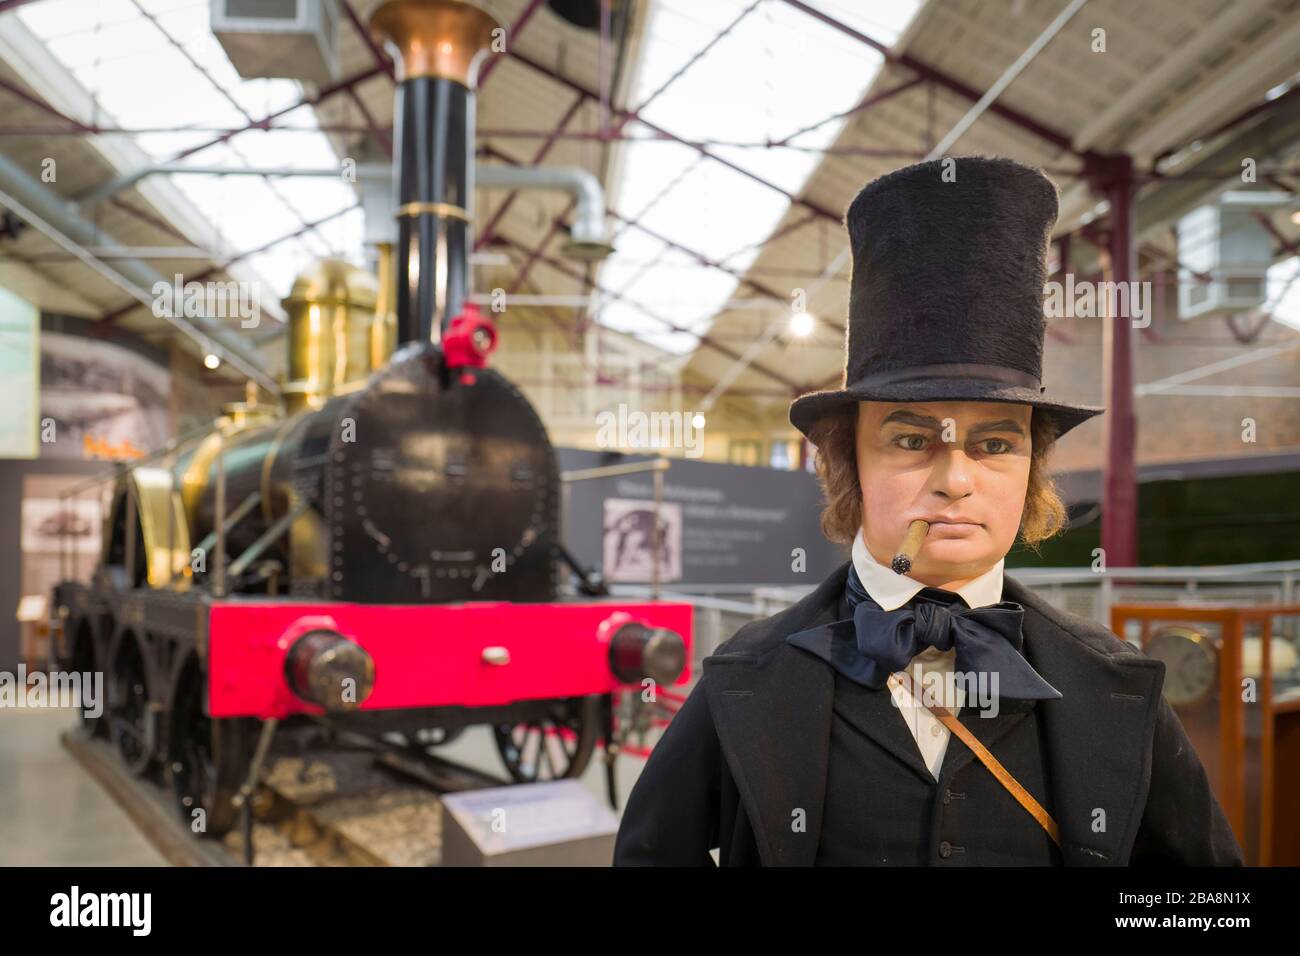 Un modèle grandeur nature d'Isambard Kingdom Brunel, célèbre entrepreneur et ingénieur victorien devant une réplique d'une de ses premières locomotives à vapeur o Banque D'Images